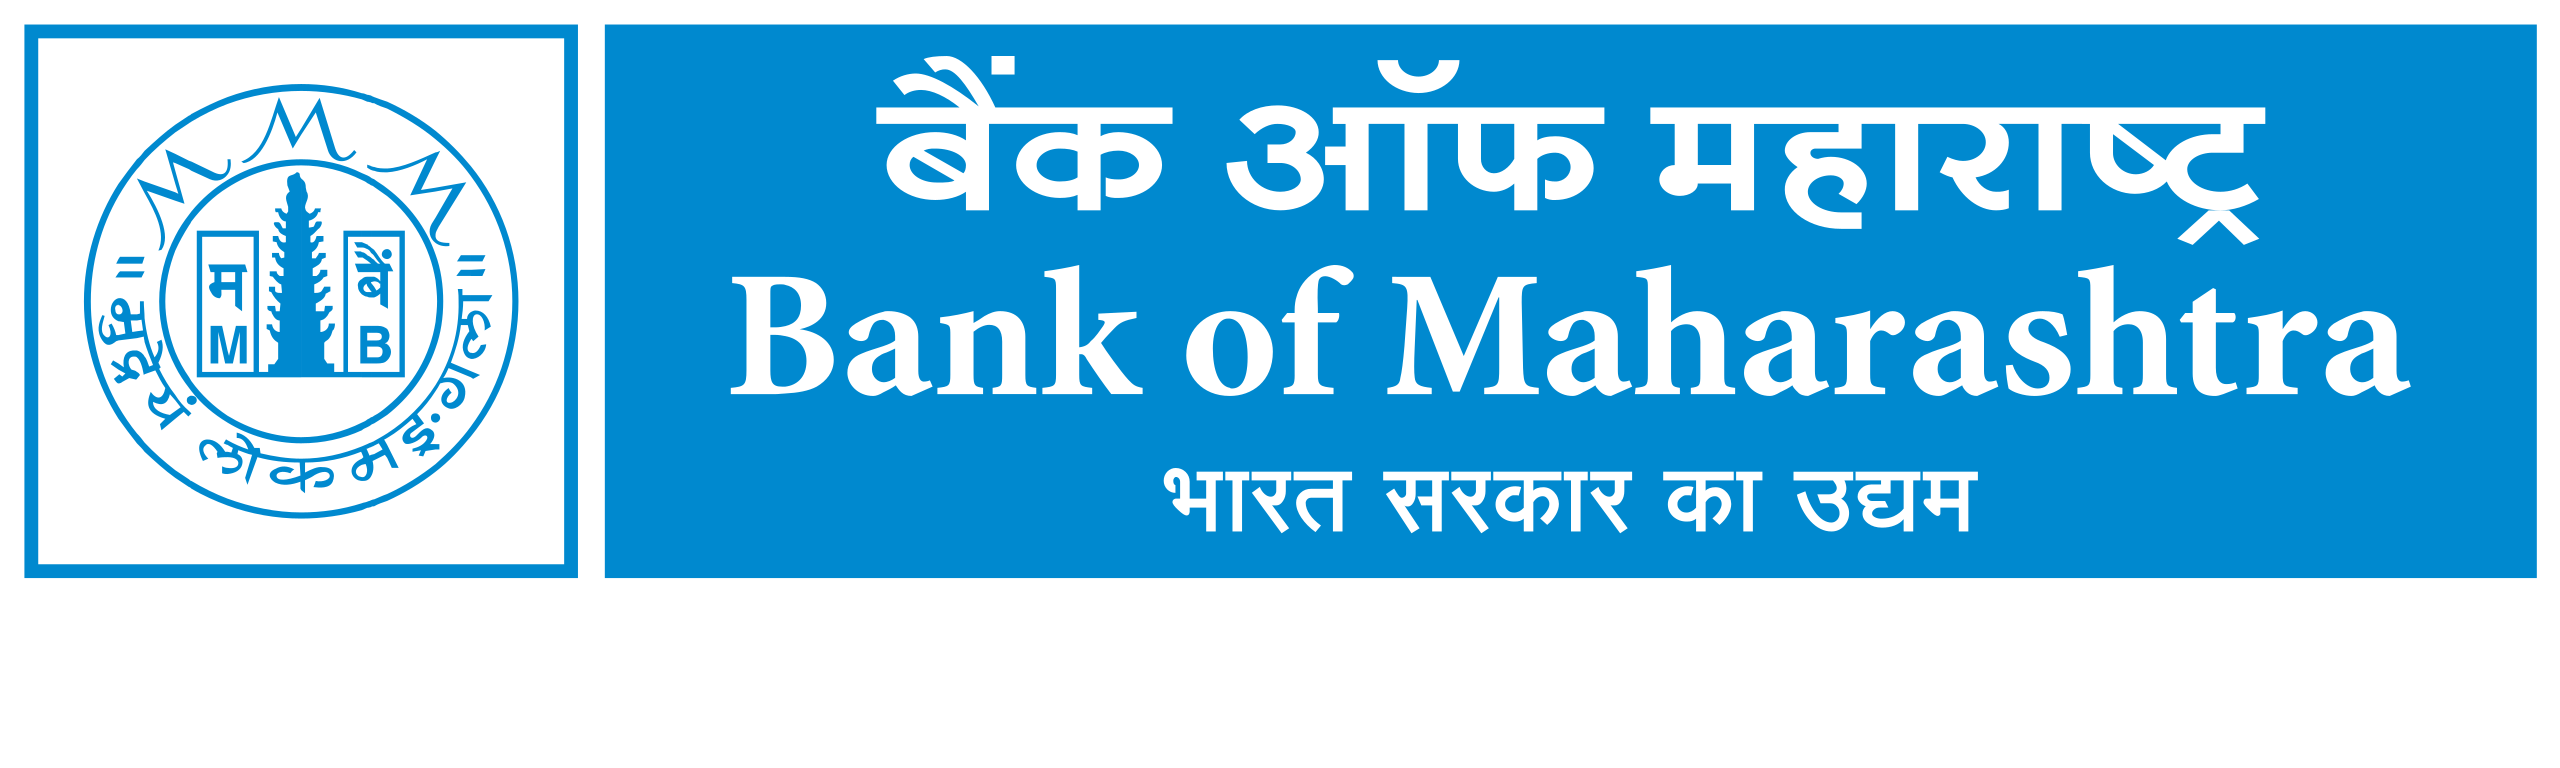 Bank_of_Maharashtra_logo.svg.png